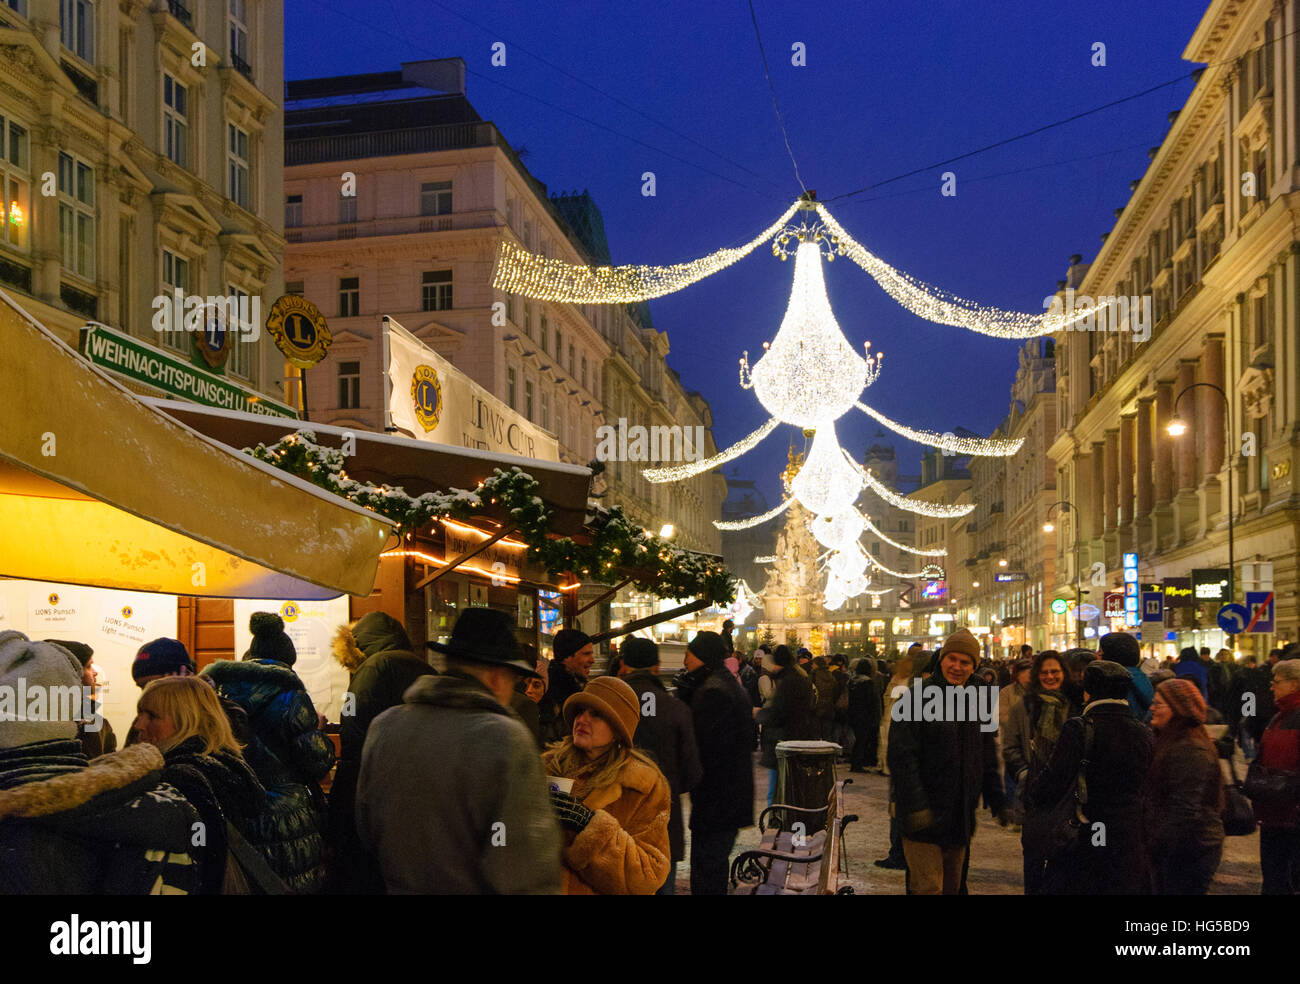 Wien, Wien: Straße Graben mit Punsch Stand im Advent, Weihnachten,  Beleuchtung, Weihnachtsdekoration, 01., Wien, Österreich Stockfotografie -  Alamy